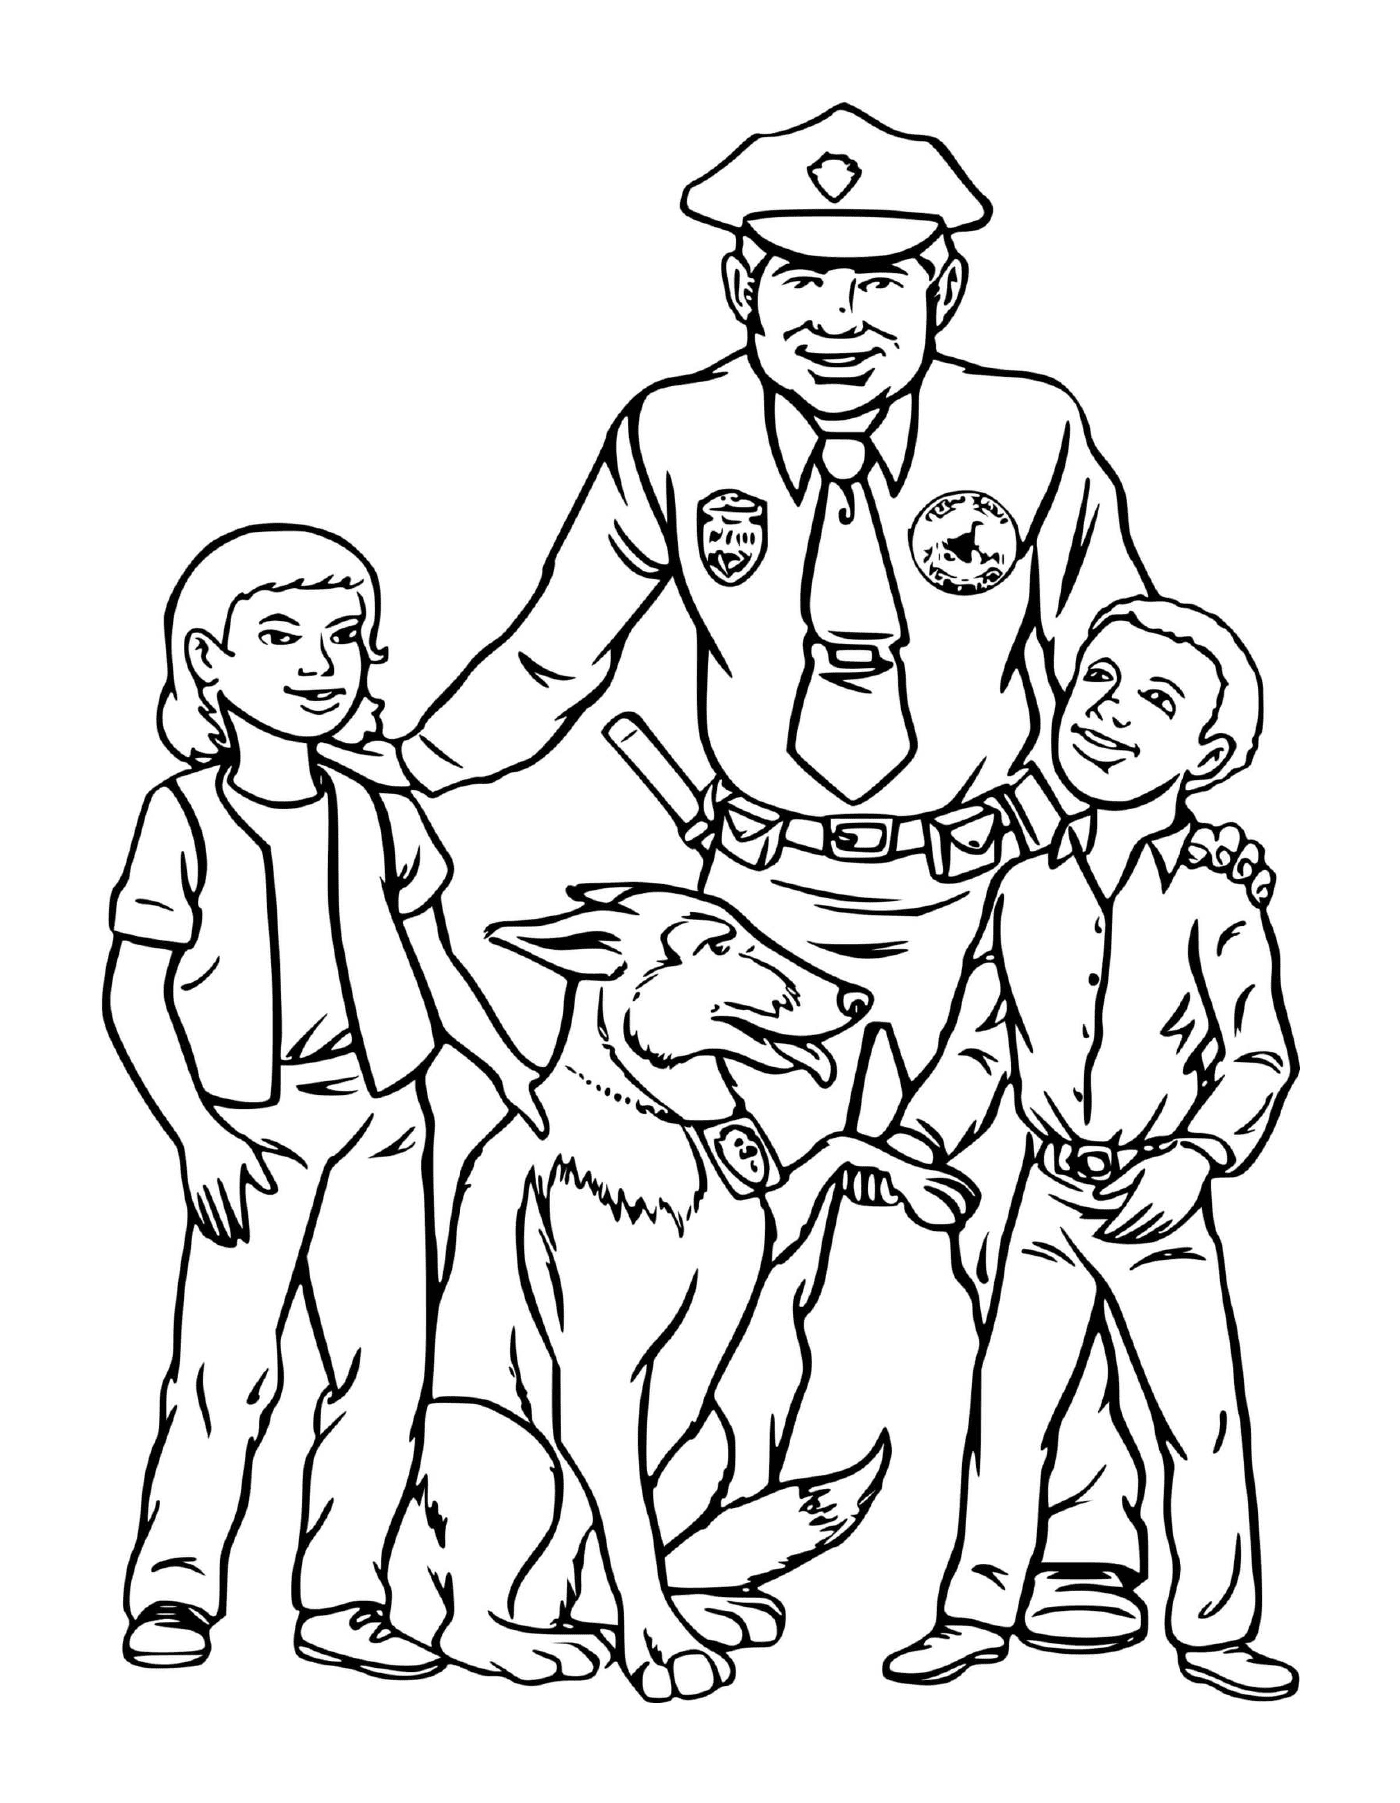  Policeman, dog, children present 